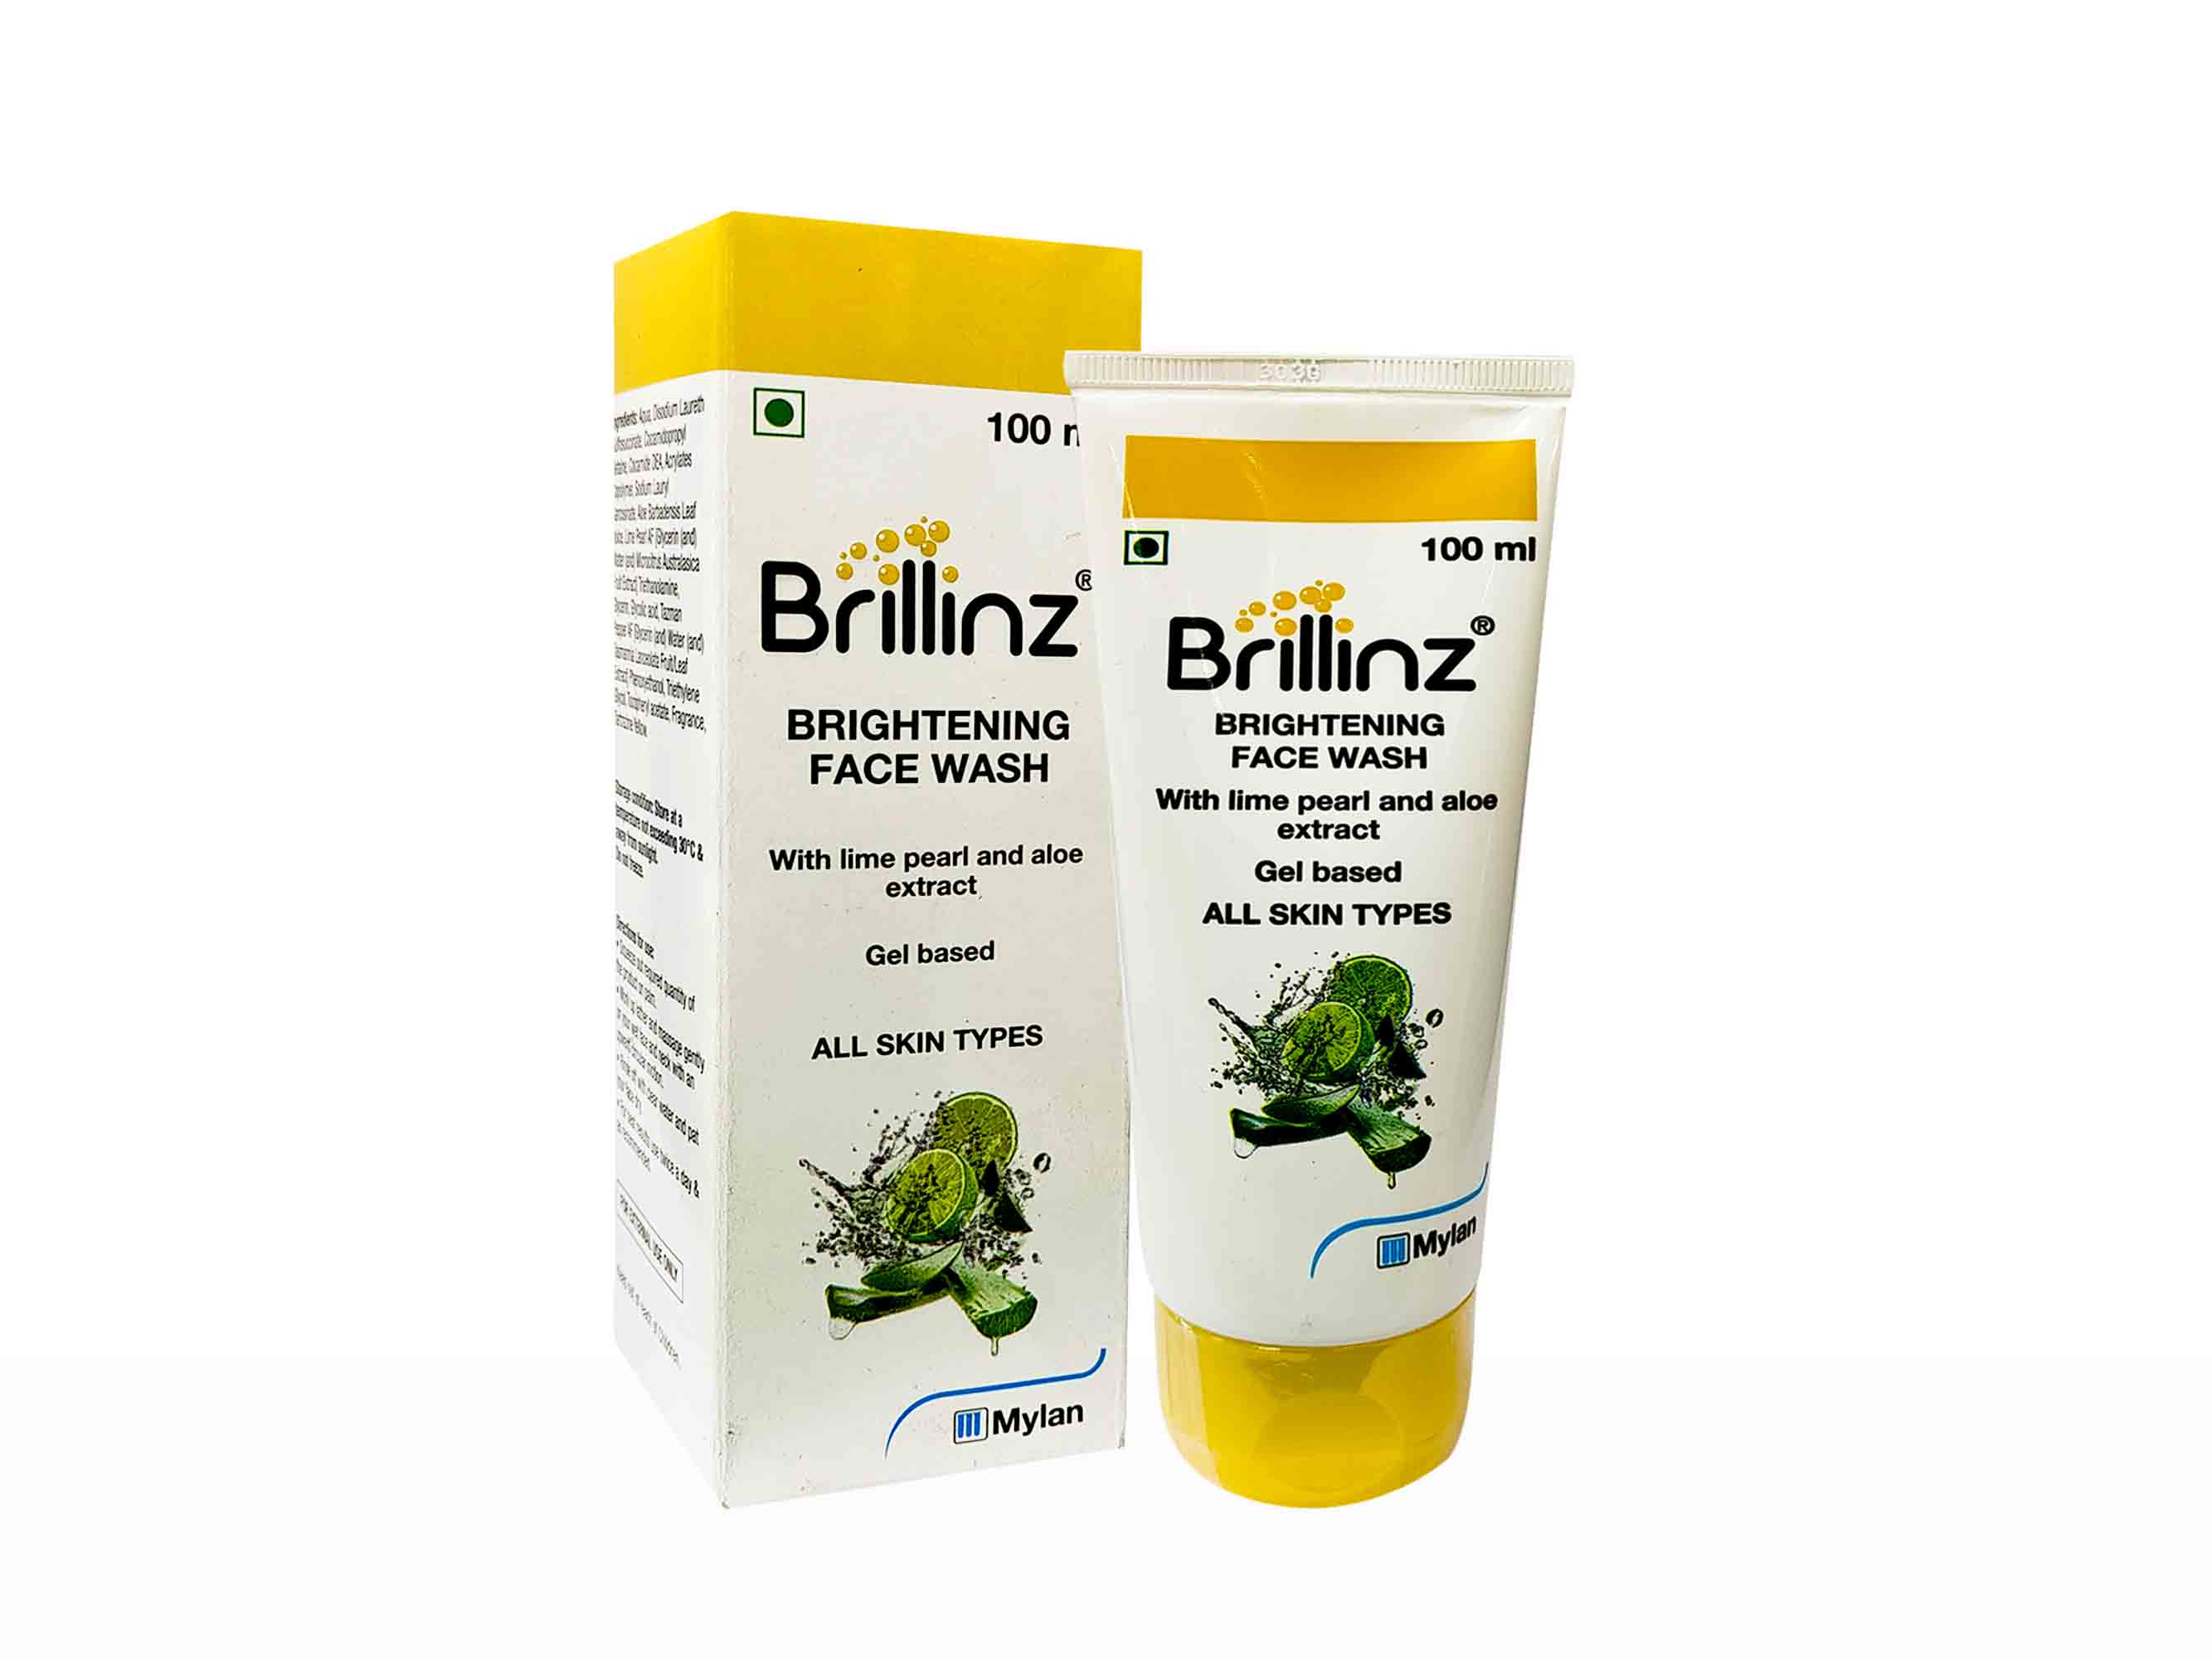 Brillinz Brightening Face Wash